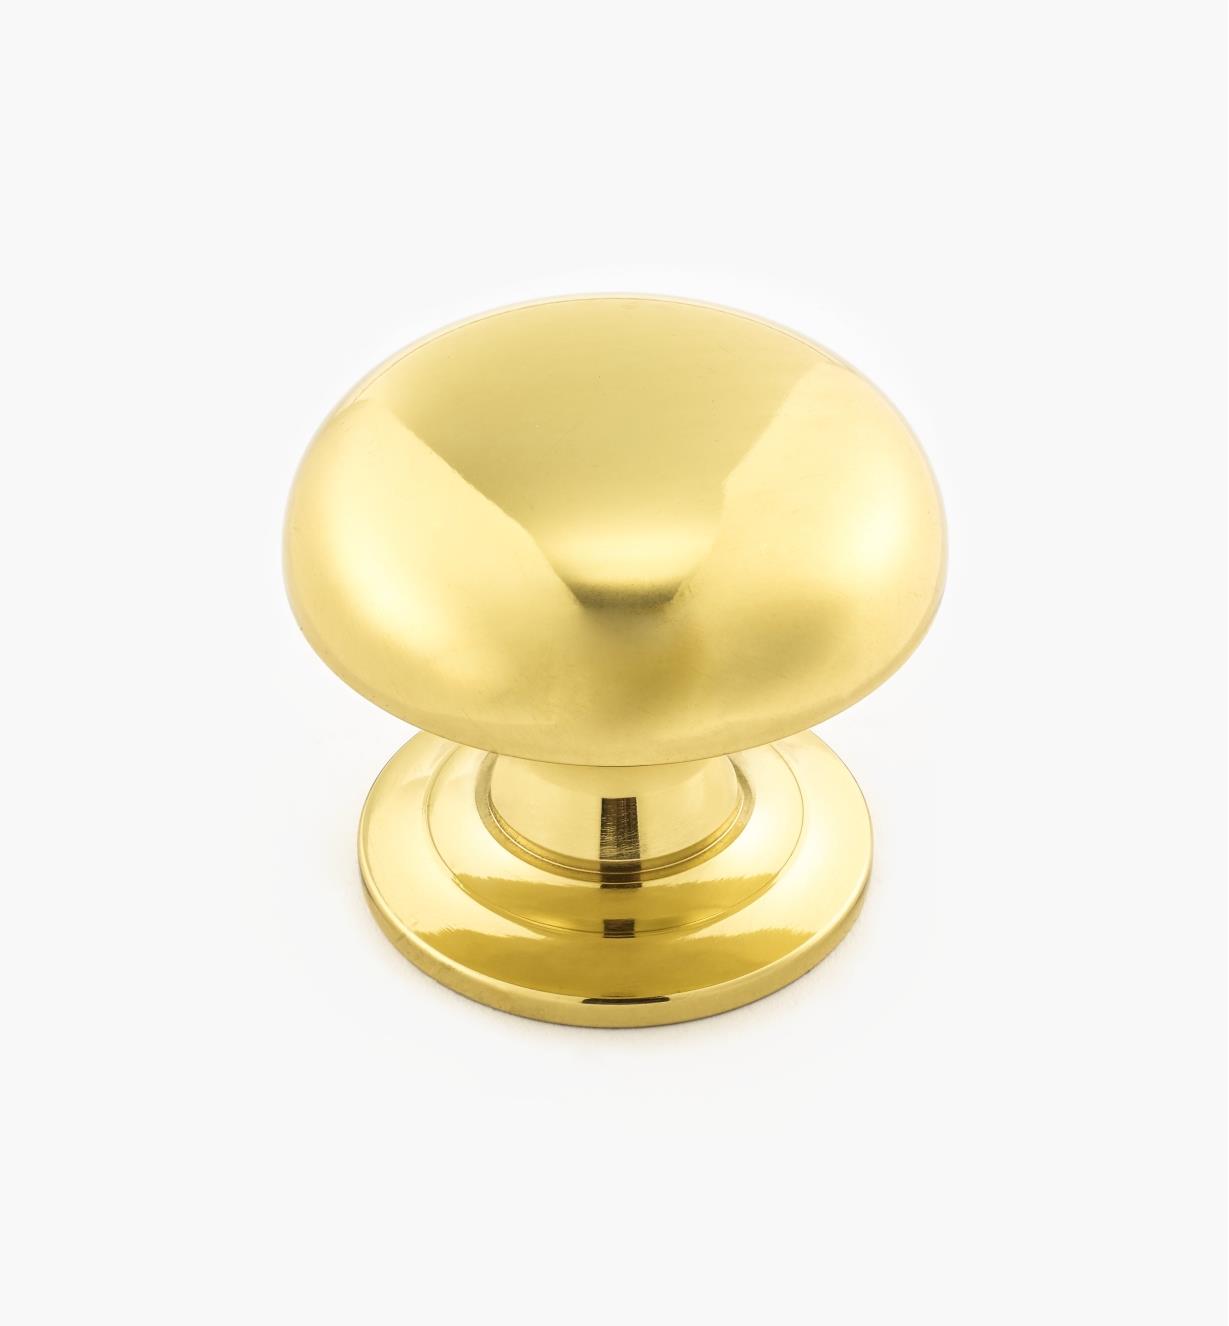 02W3209 - Polished Brass Suite - 1 1/2" x 1 1/4" Turned Brass Dome Knob